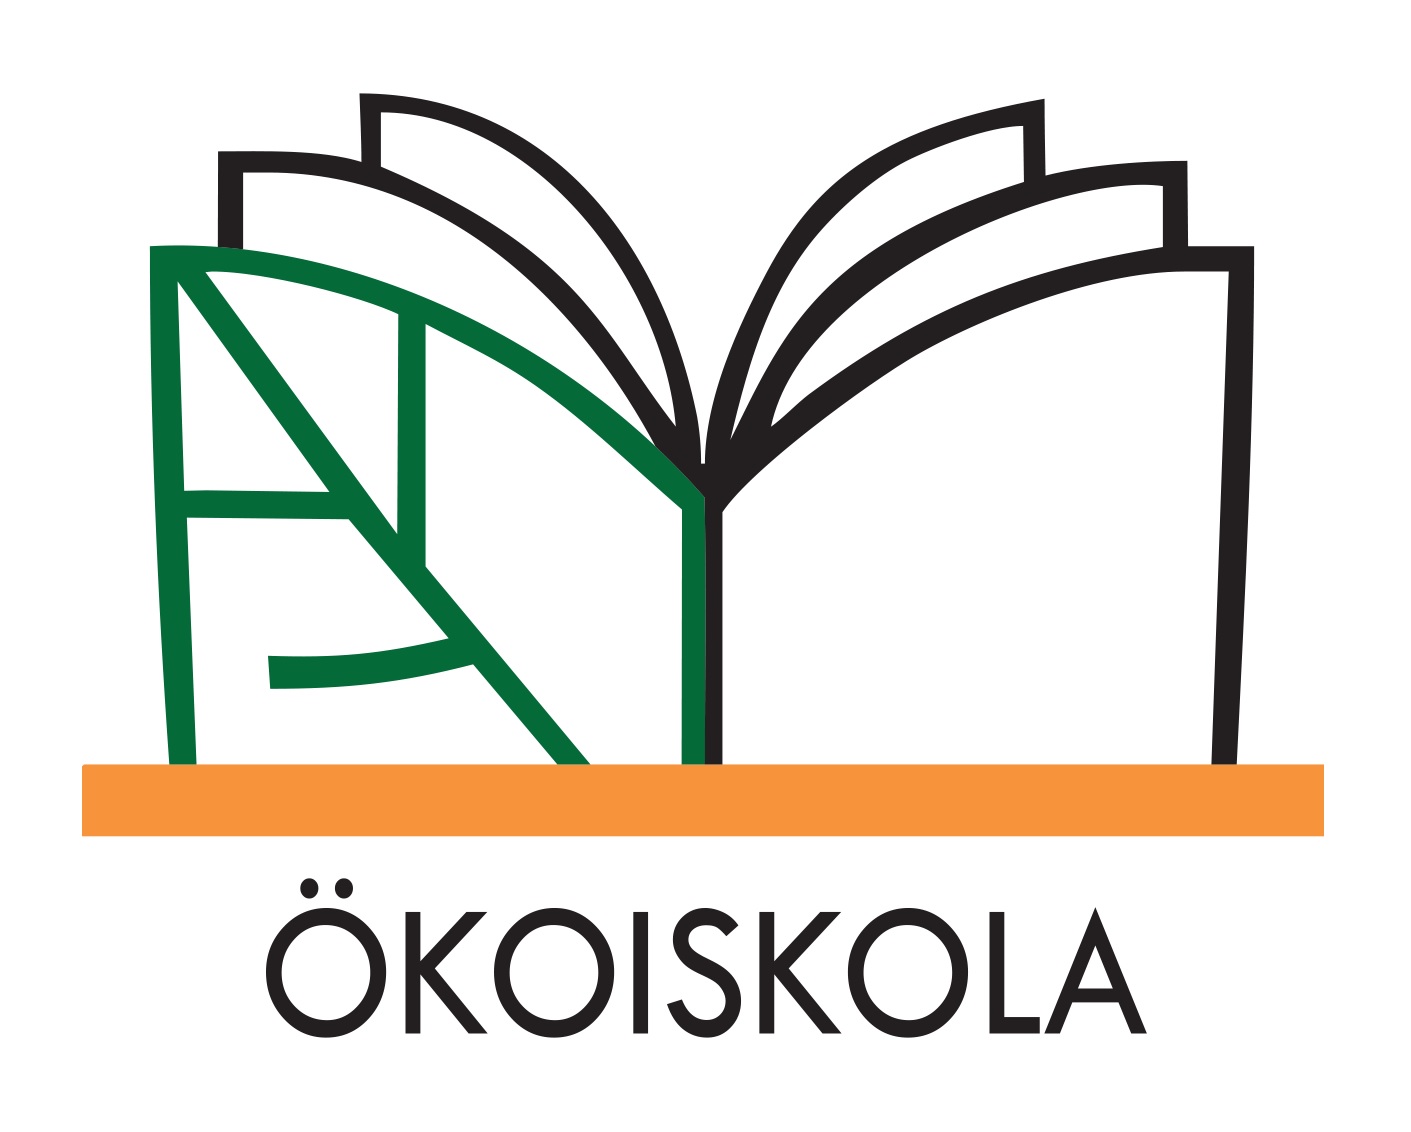 Ökoiskola logó